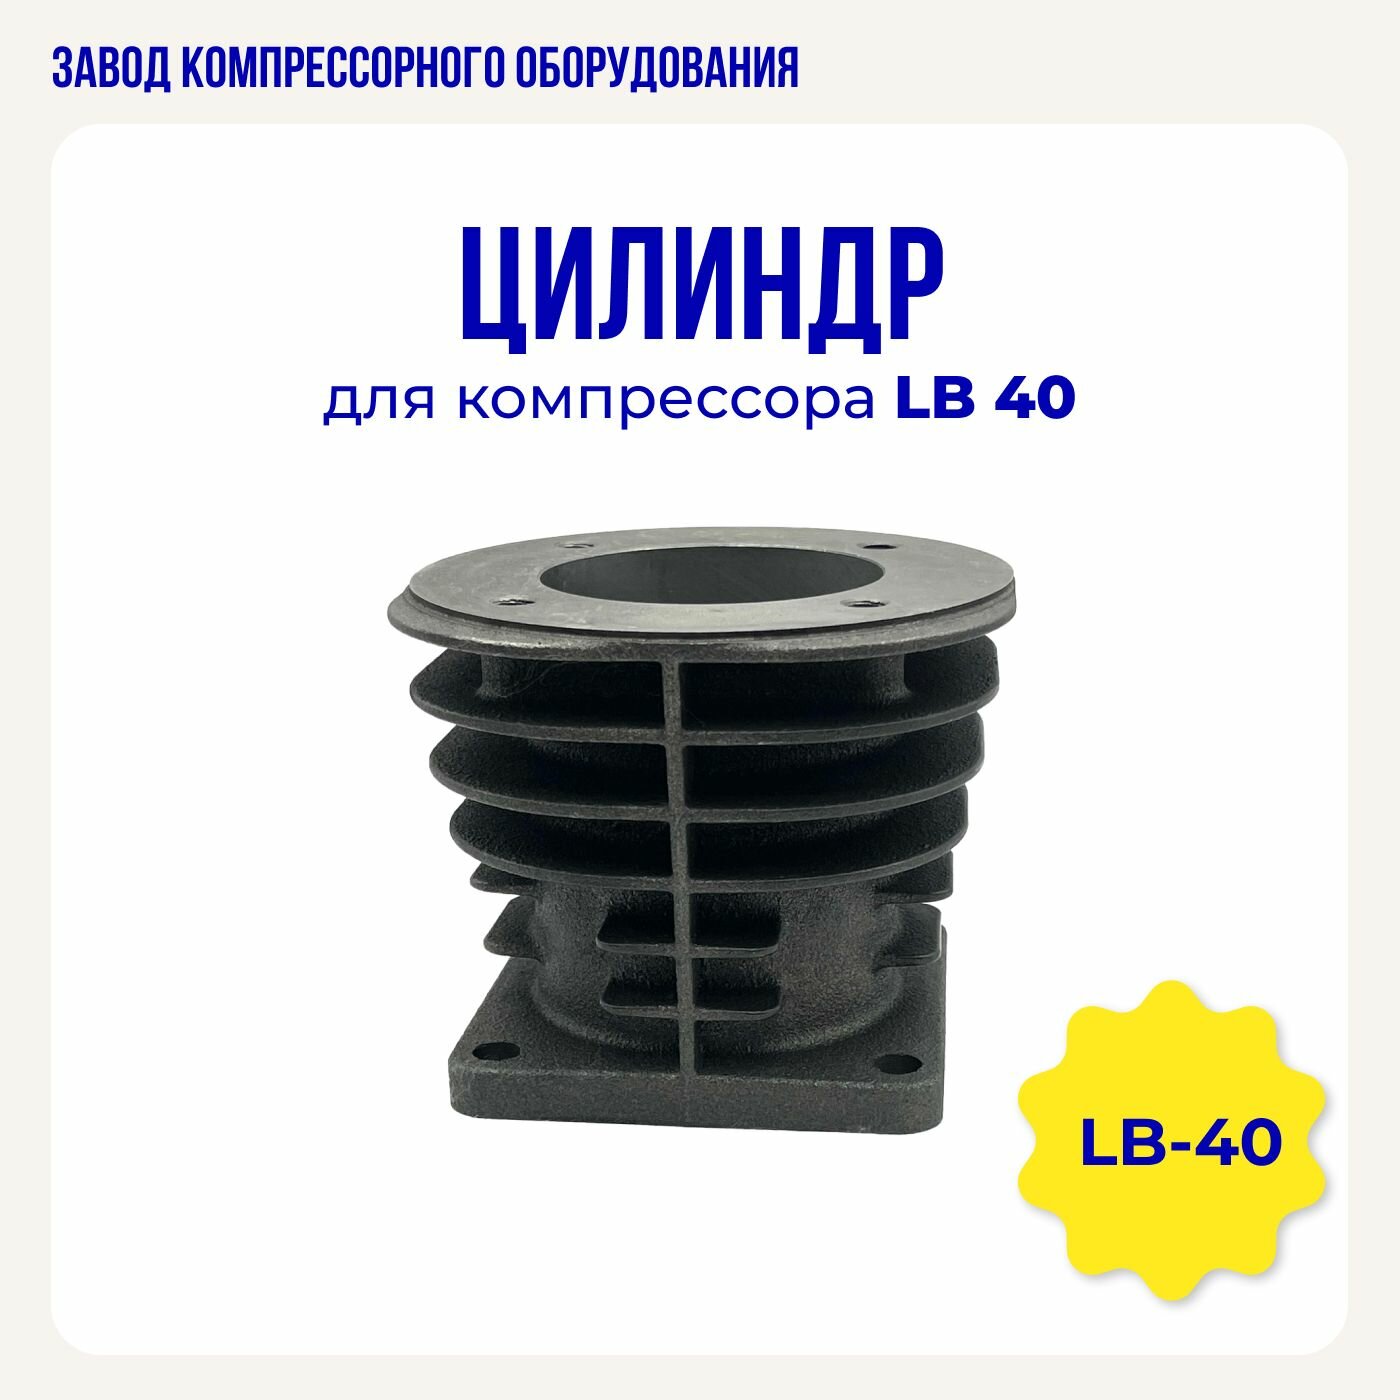 Цилиндр для воздушного компрессора LB40